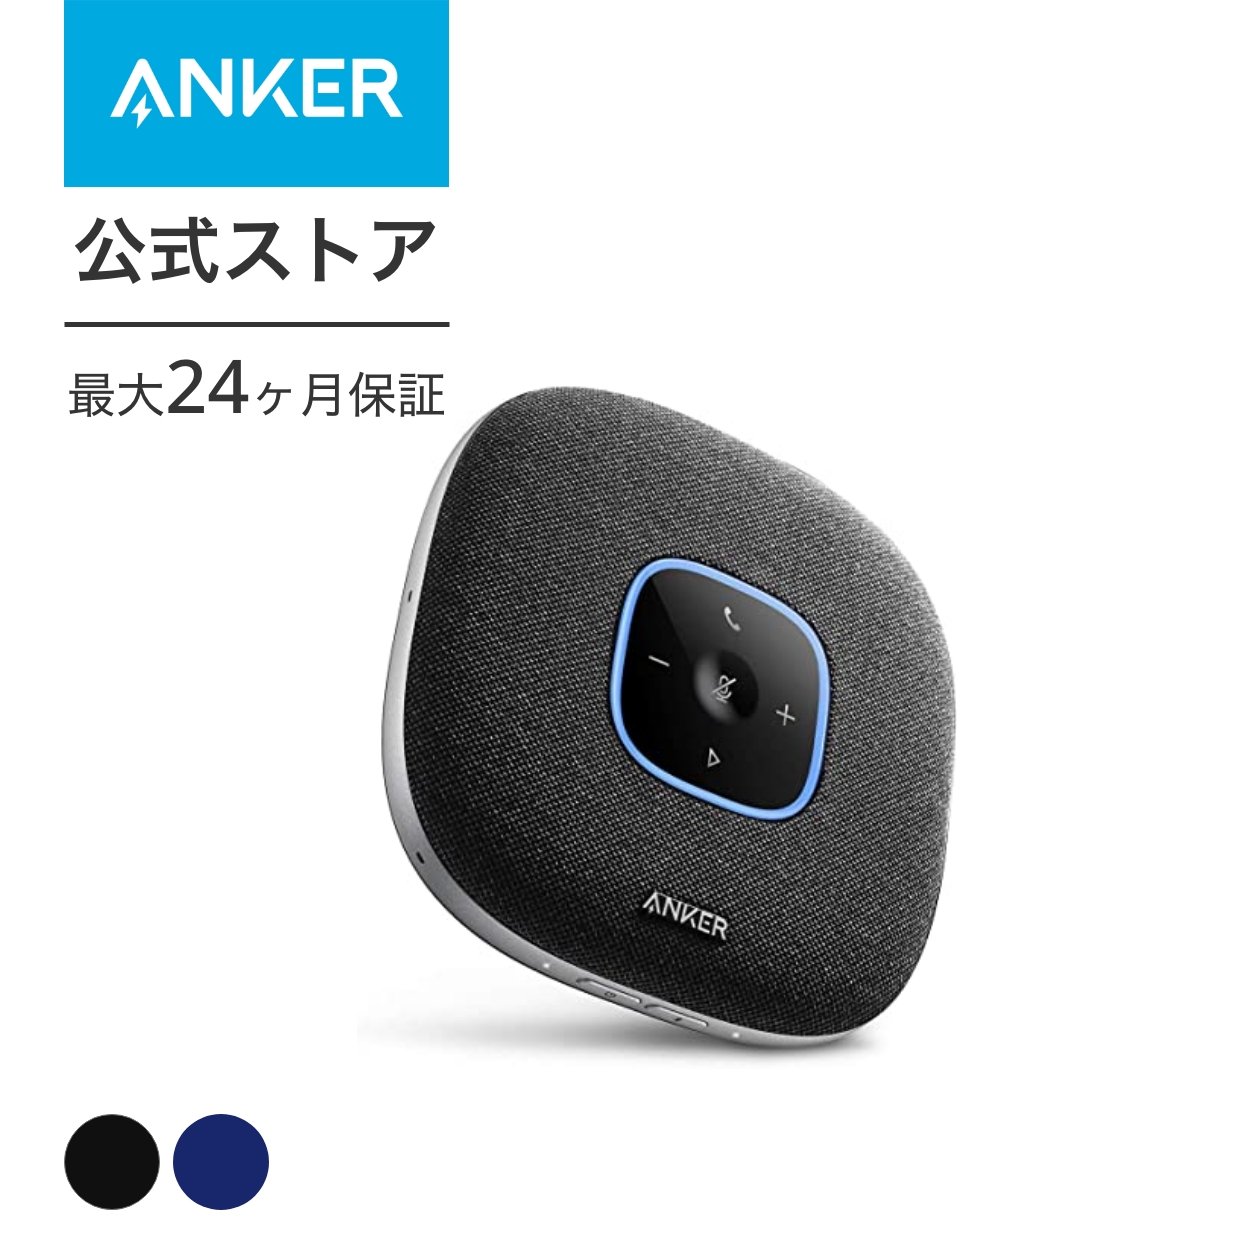 Anker PowerConf S3 динамик phone для собраний Mike Bluetooth соответствует 24 час продолжение использование группа режим соответствует USB-C подключение online собрание tere Work оставаясь дома якорь 